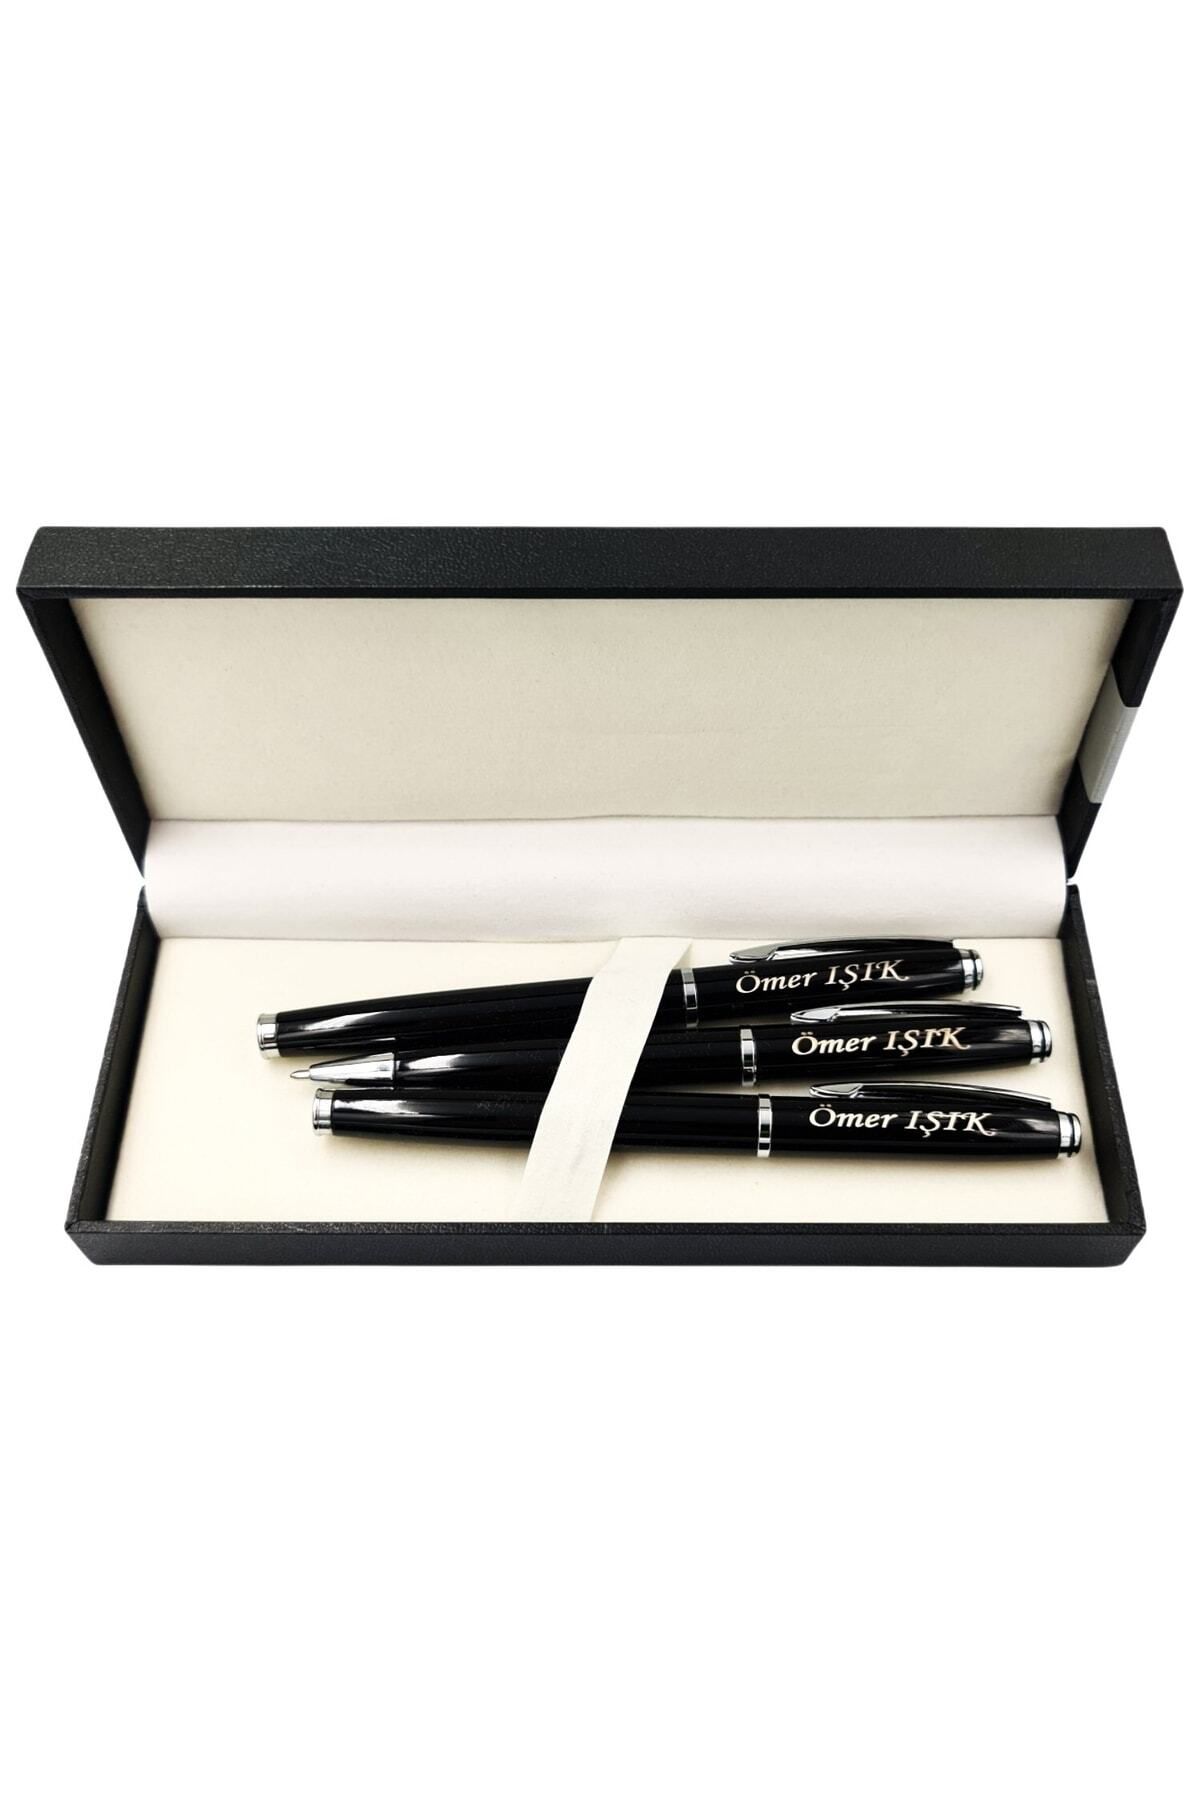 NRDLİFE Kişiye Özel Isim Baskılı Siyah 3 Lü Kalem Seti Dolma Kalem-roller Kalem-tükenmez Kalem